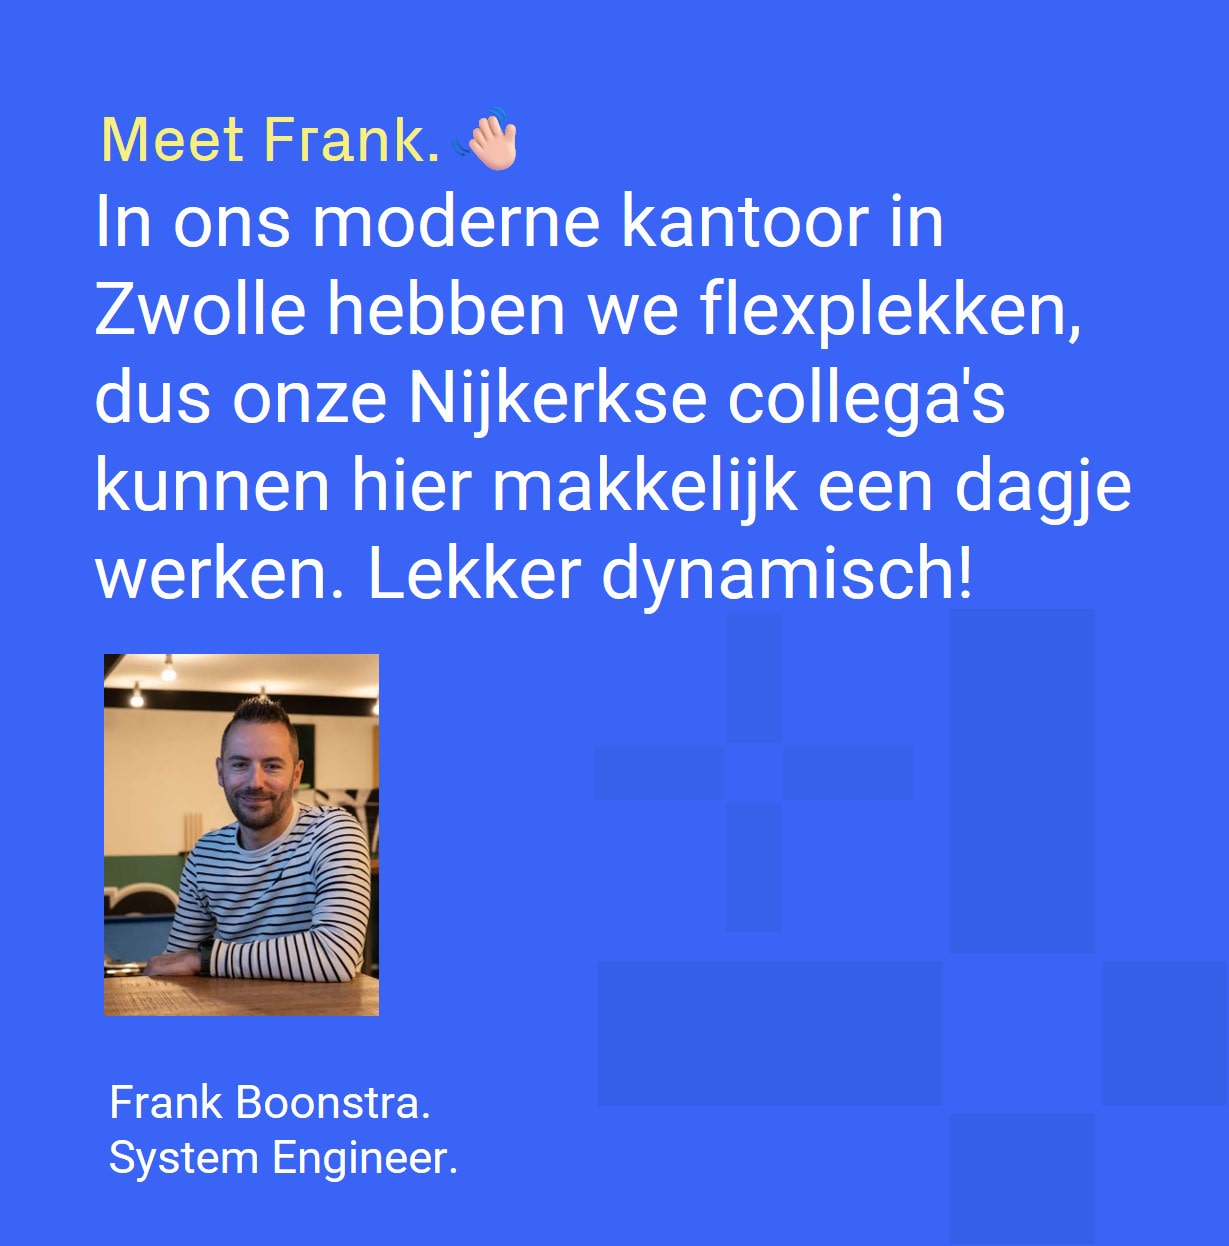 Frank Boonstra - System Engineer verteld over werken bij Optimizers. In ons moderne kantoor in zwolle hebben we flexplekken, dus onze Nijkerkse collega's kunnen hier makkelijk een dagje werken. Lekker dynamisch!